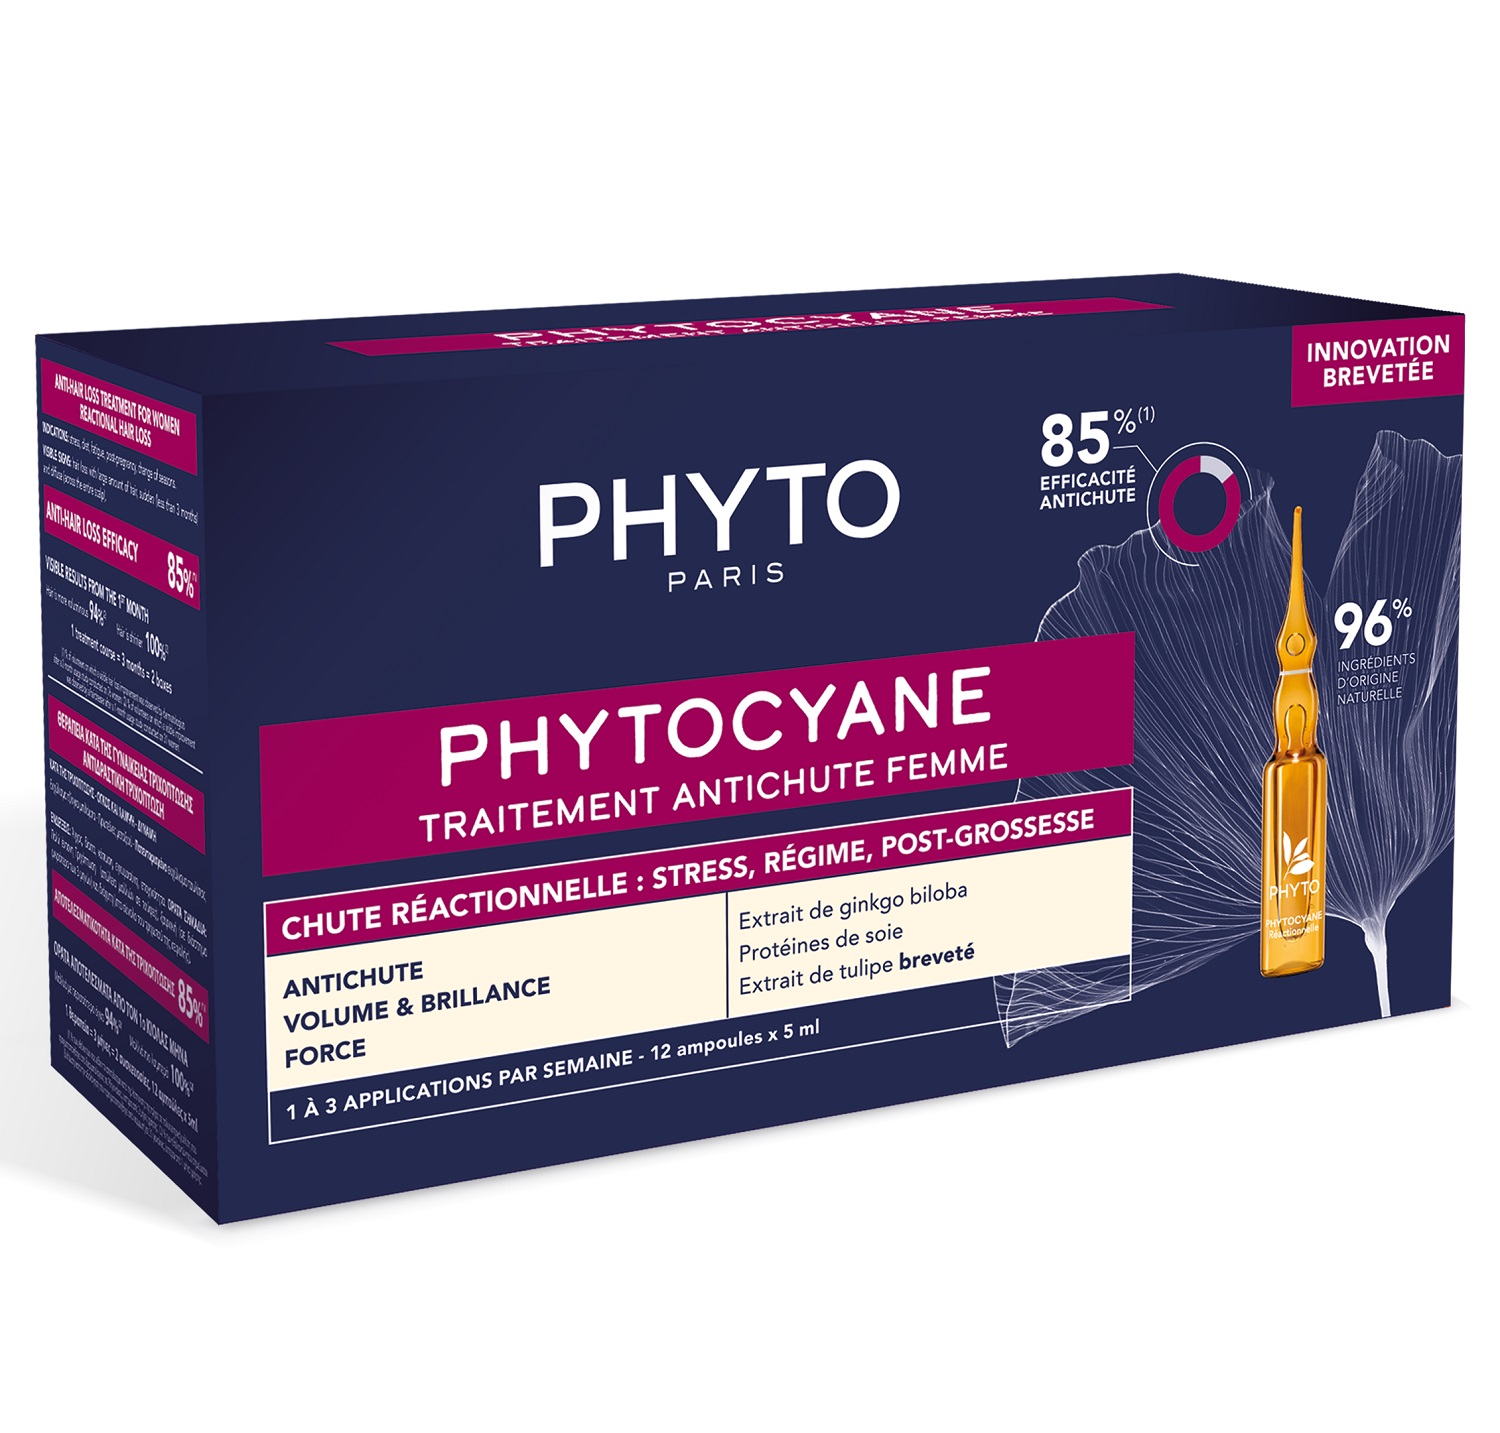 Phyto Сыворотка против выпадения волос для женщин, 12 ампул х 5 мл (Phyto, Phytocyane) phyto сыворотка против выпадения волос для женщин 12 флаконов х 5 мл phyto phytocyane